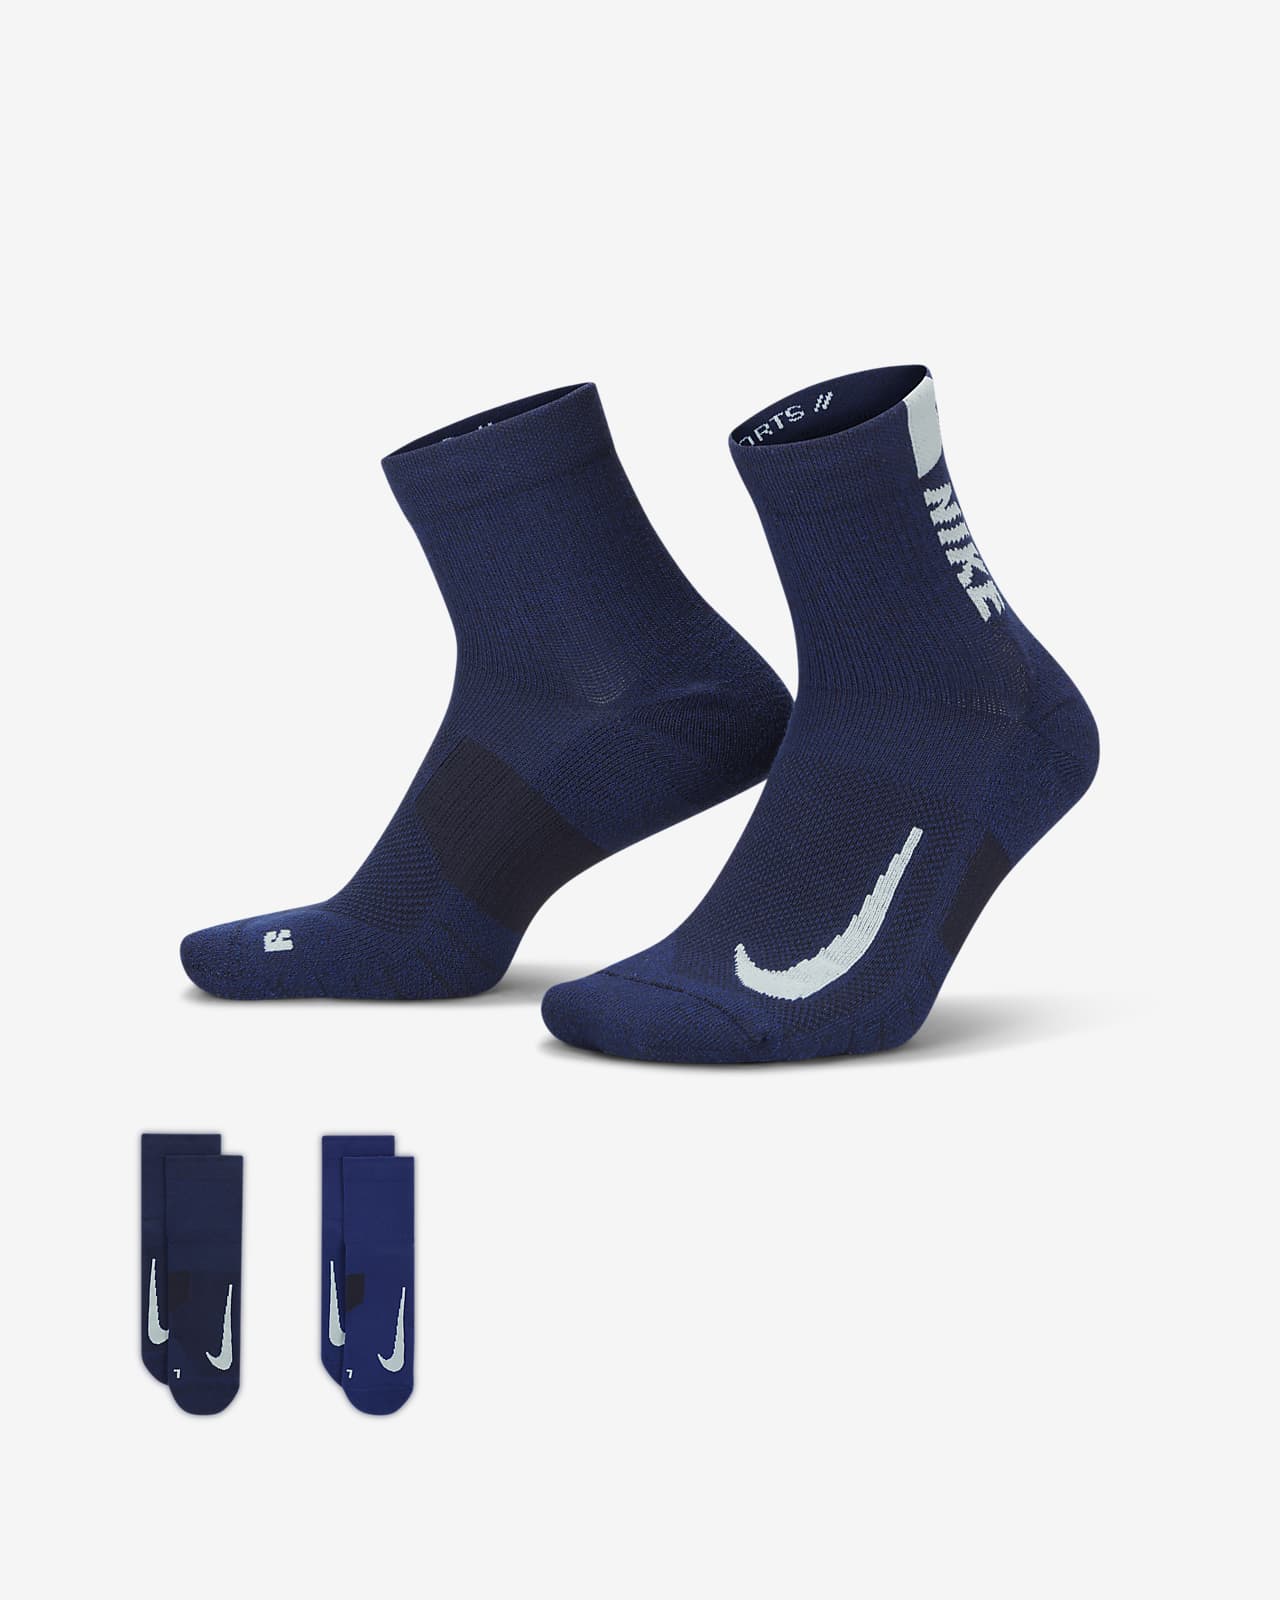 Running Ankle Socks Pair). Nike.com